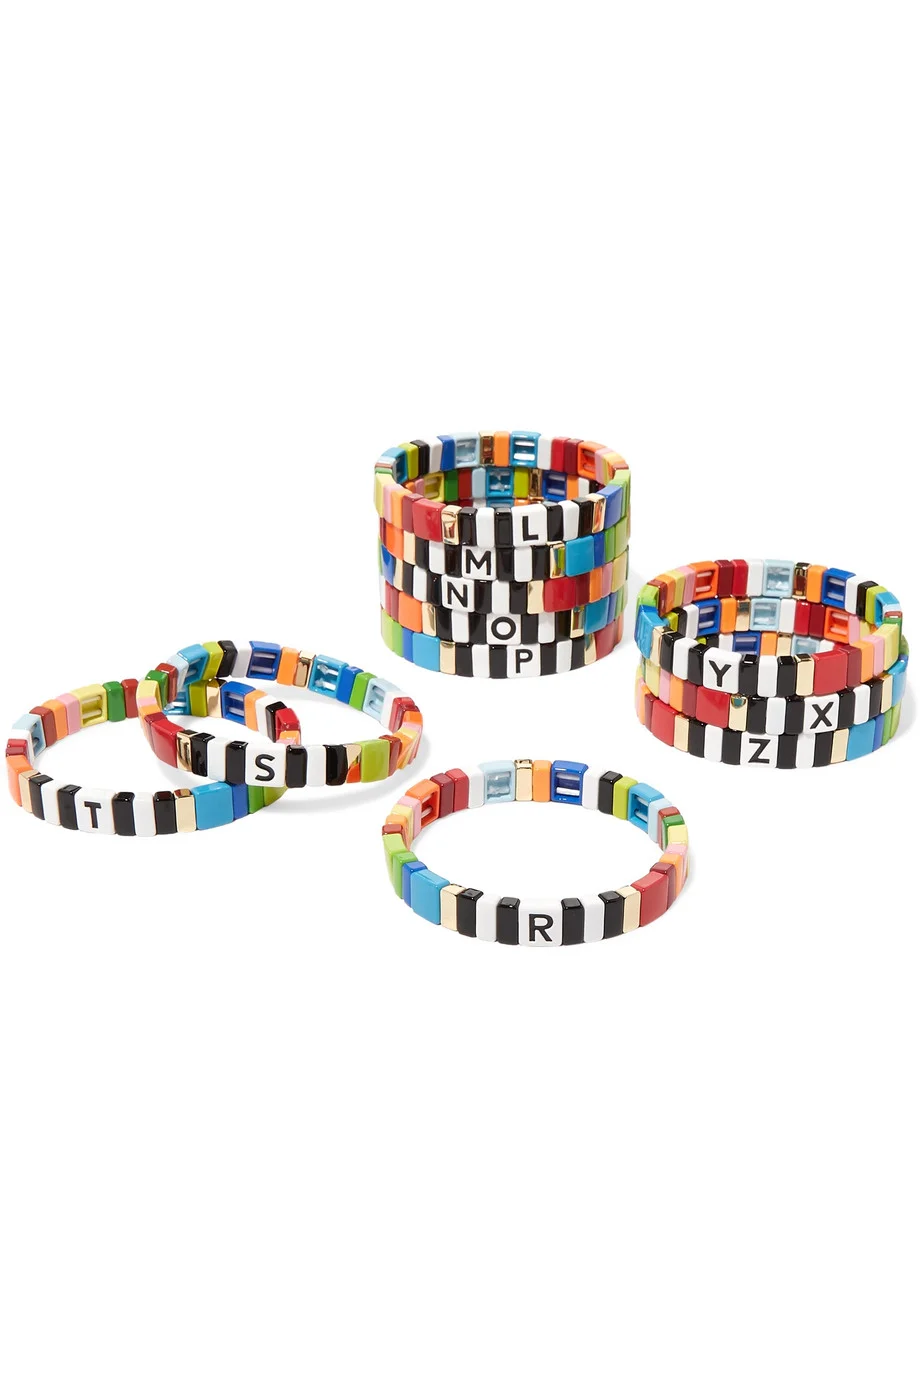 Roxanne Assoulin - Little Letters Bracelets